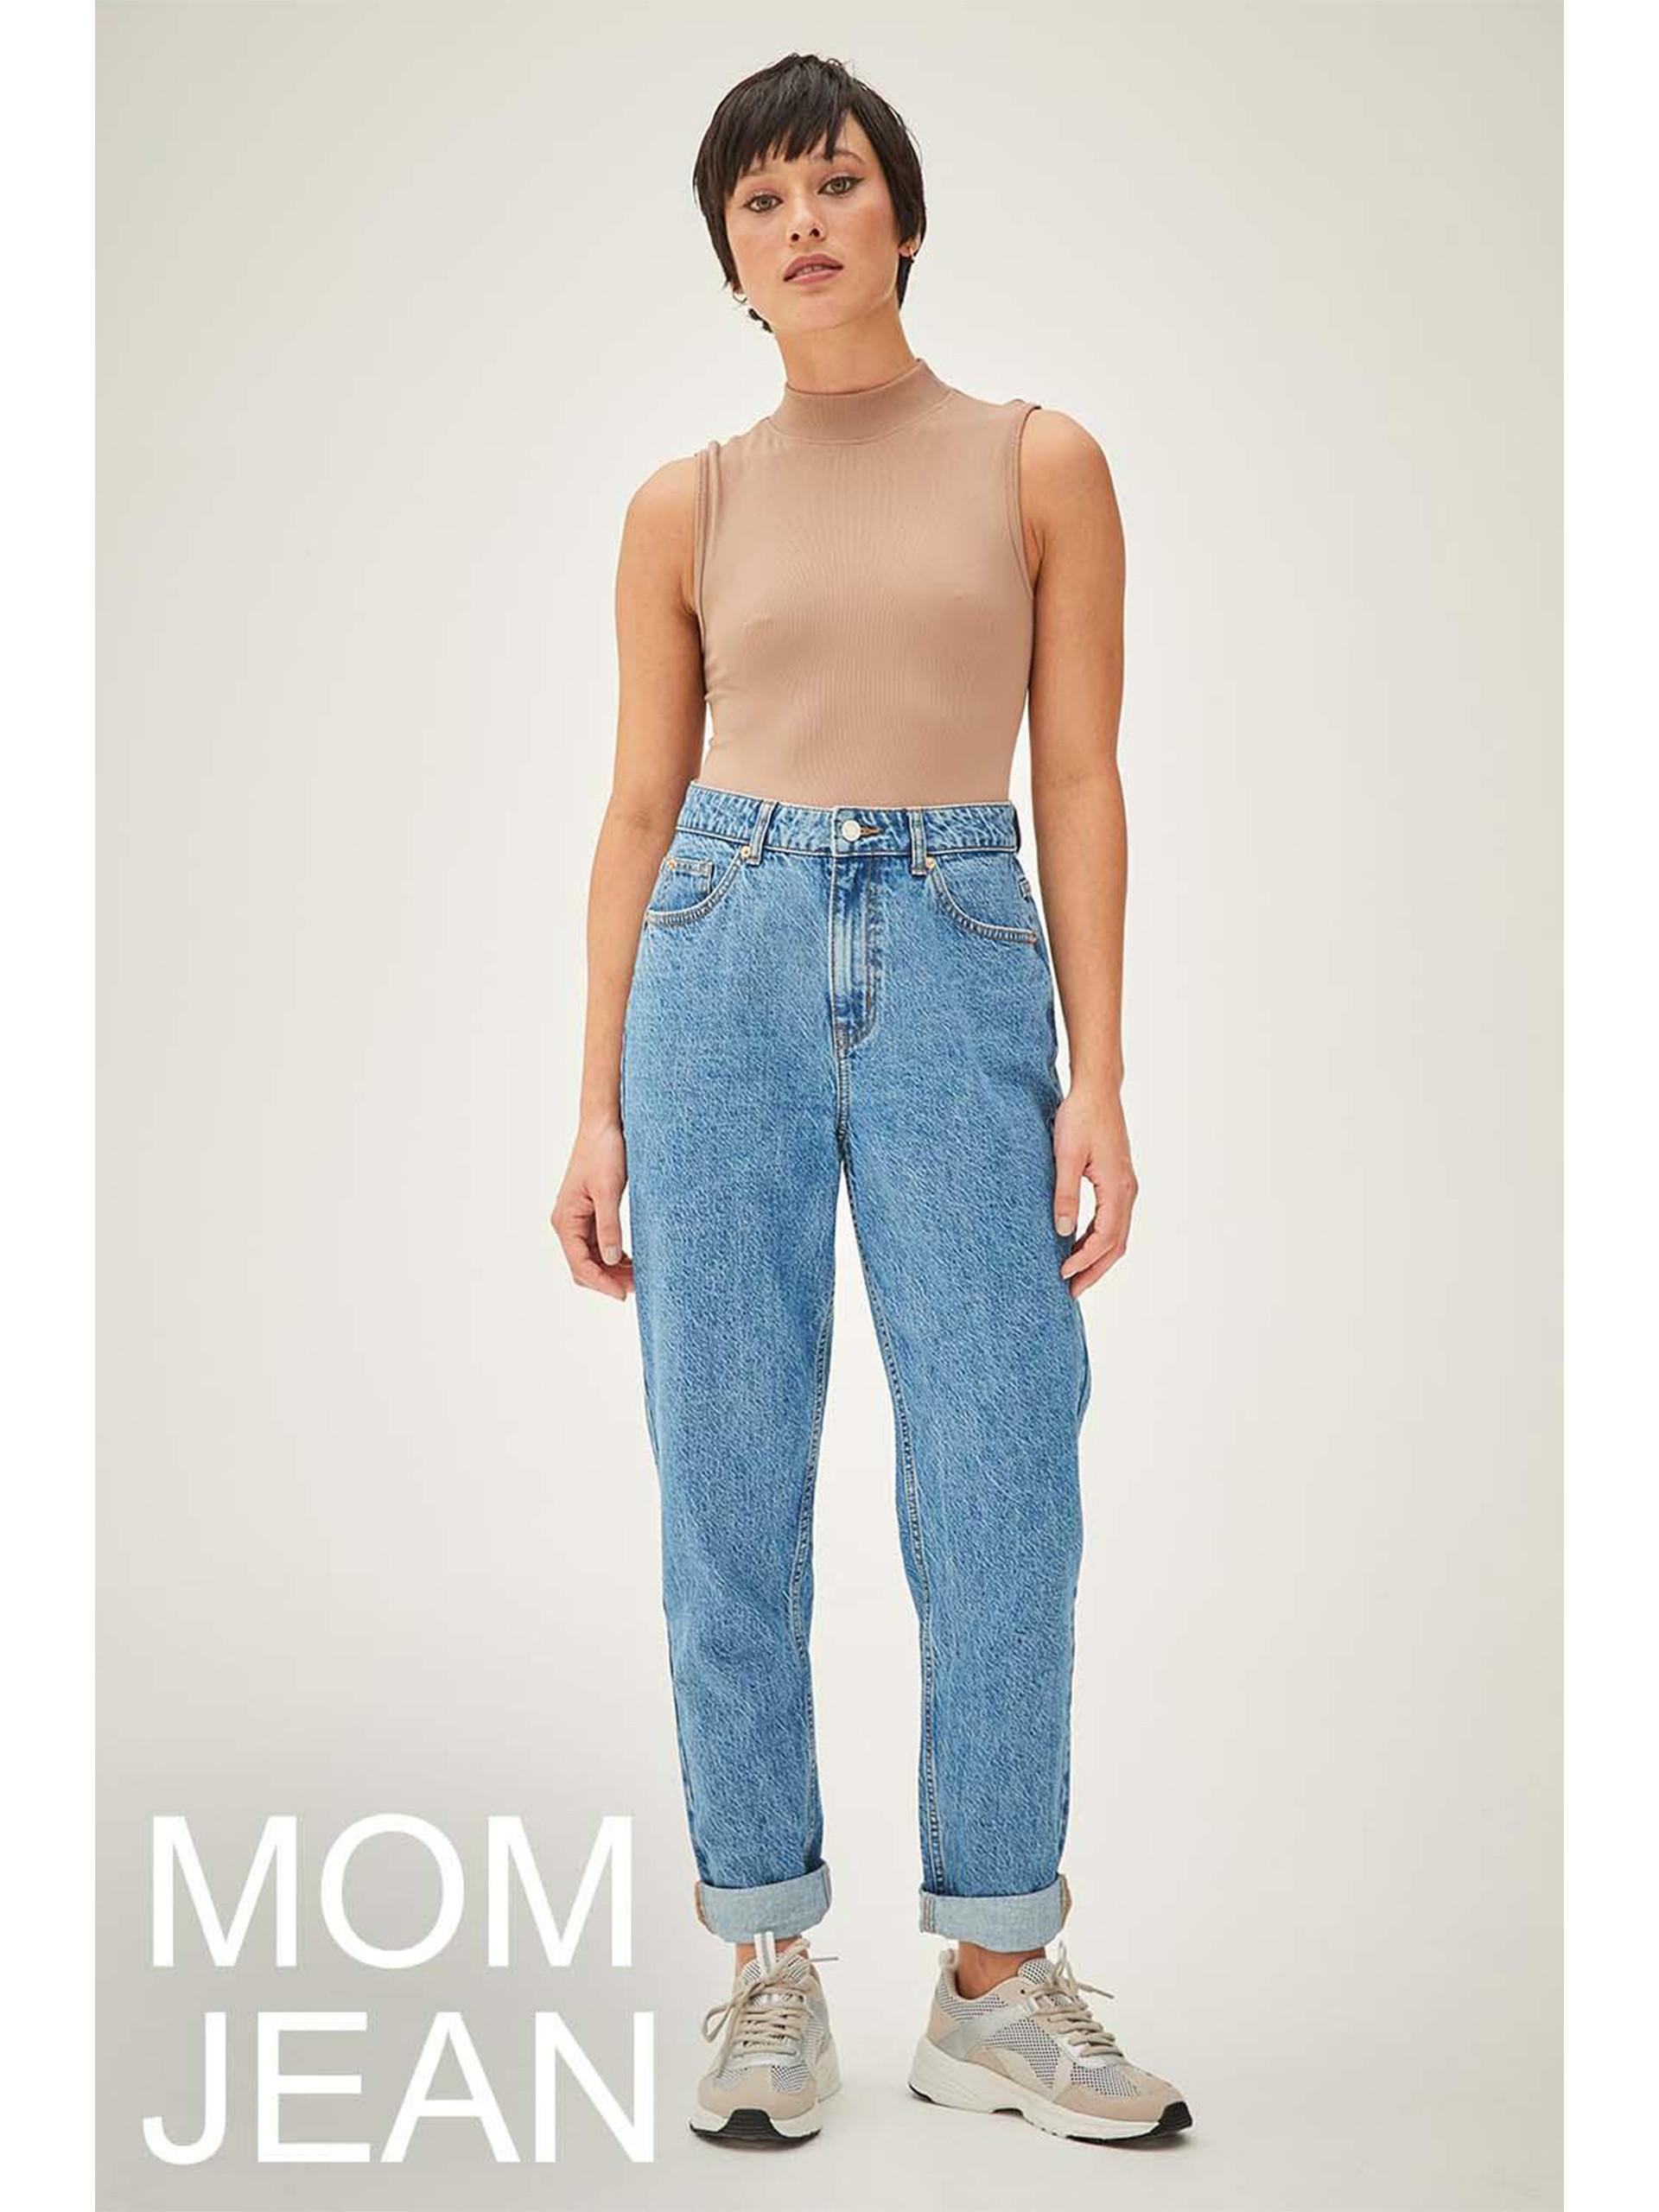 Model wears blue denim Mom Jeans